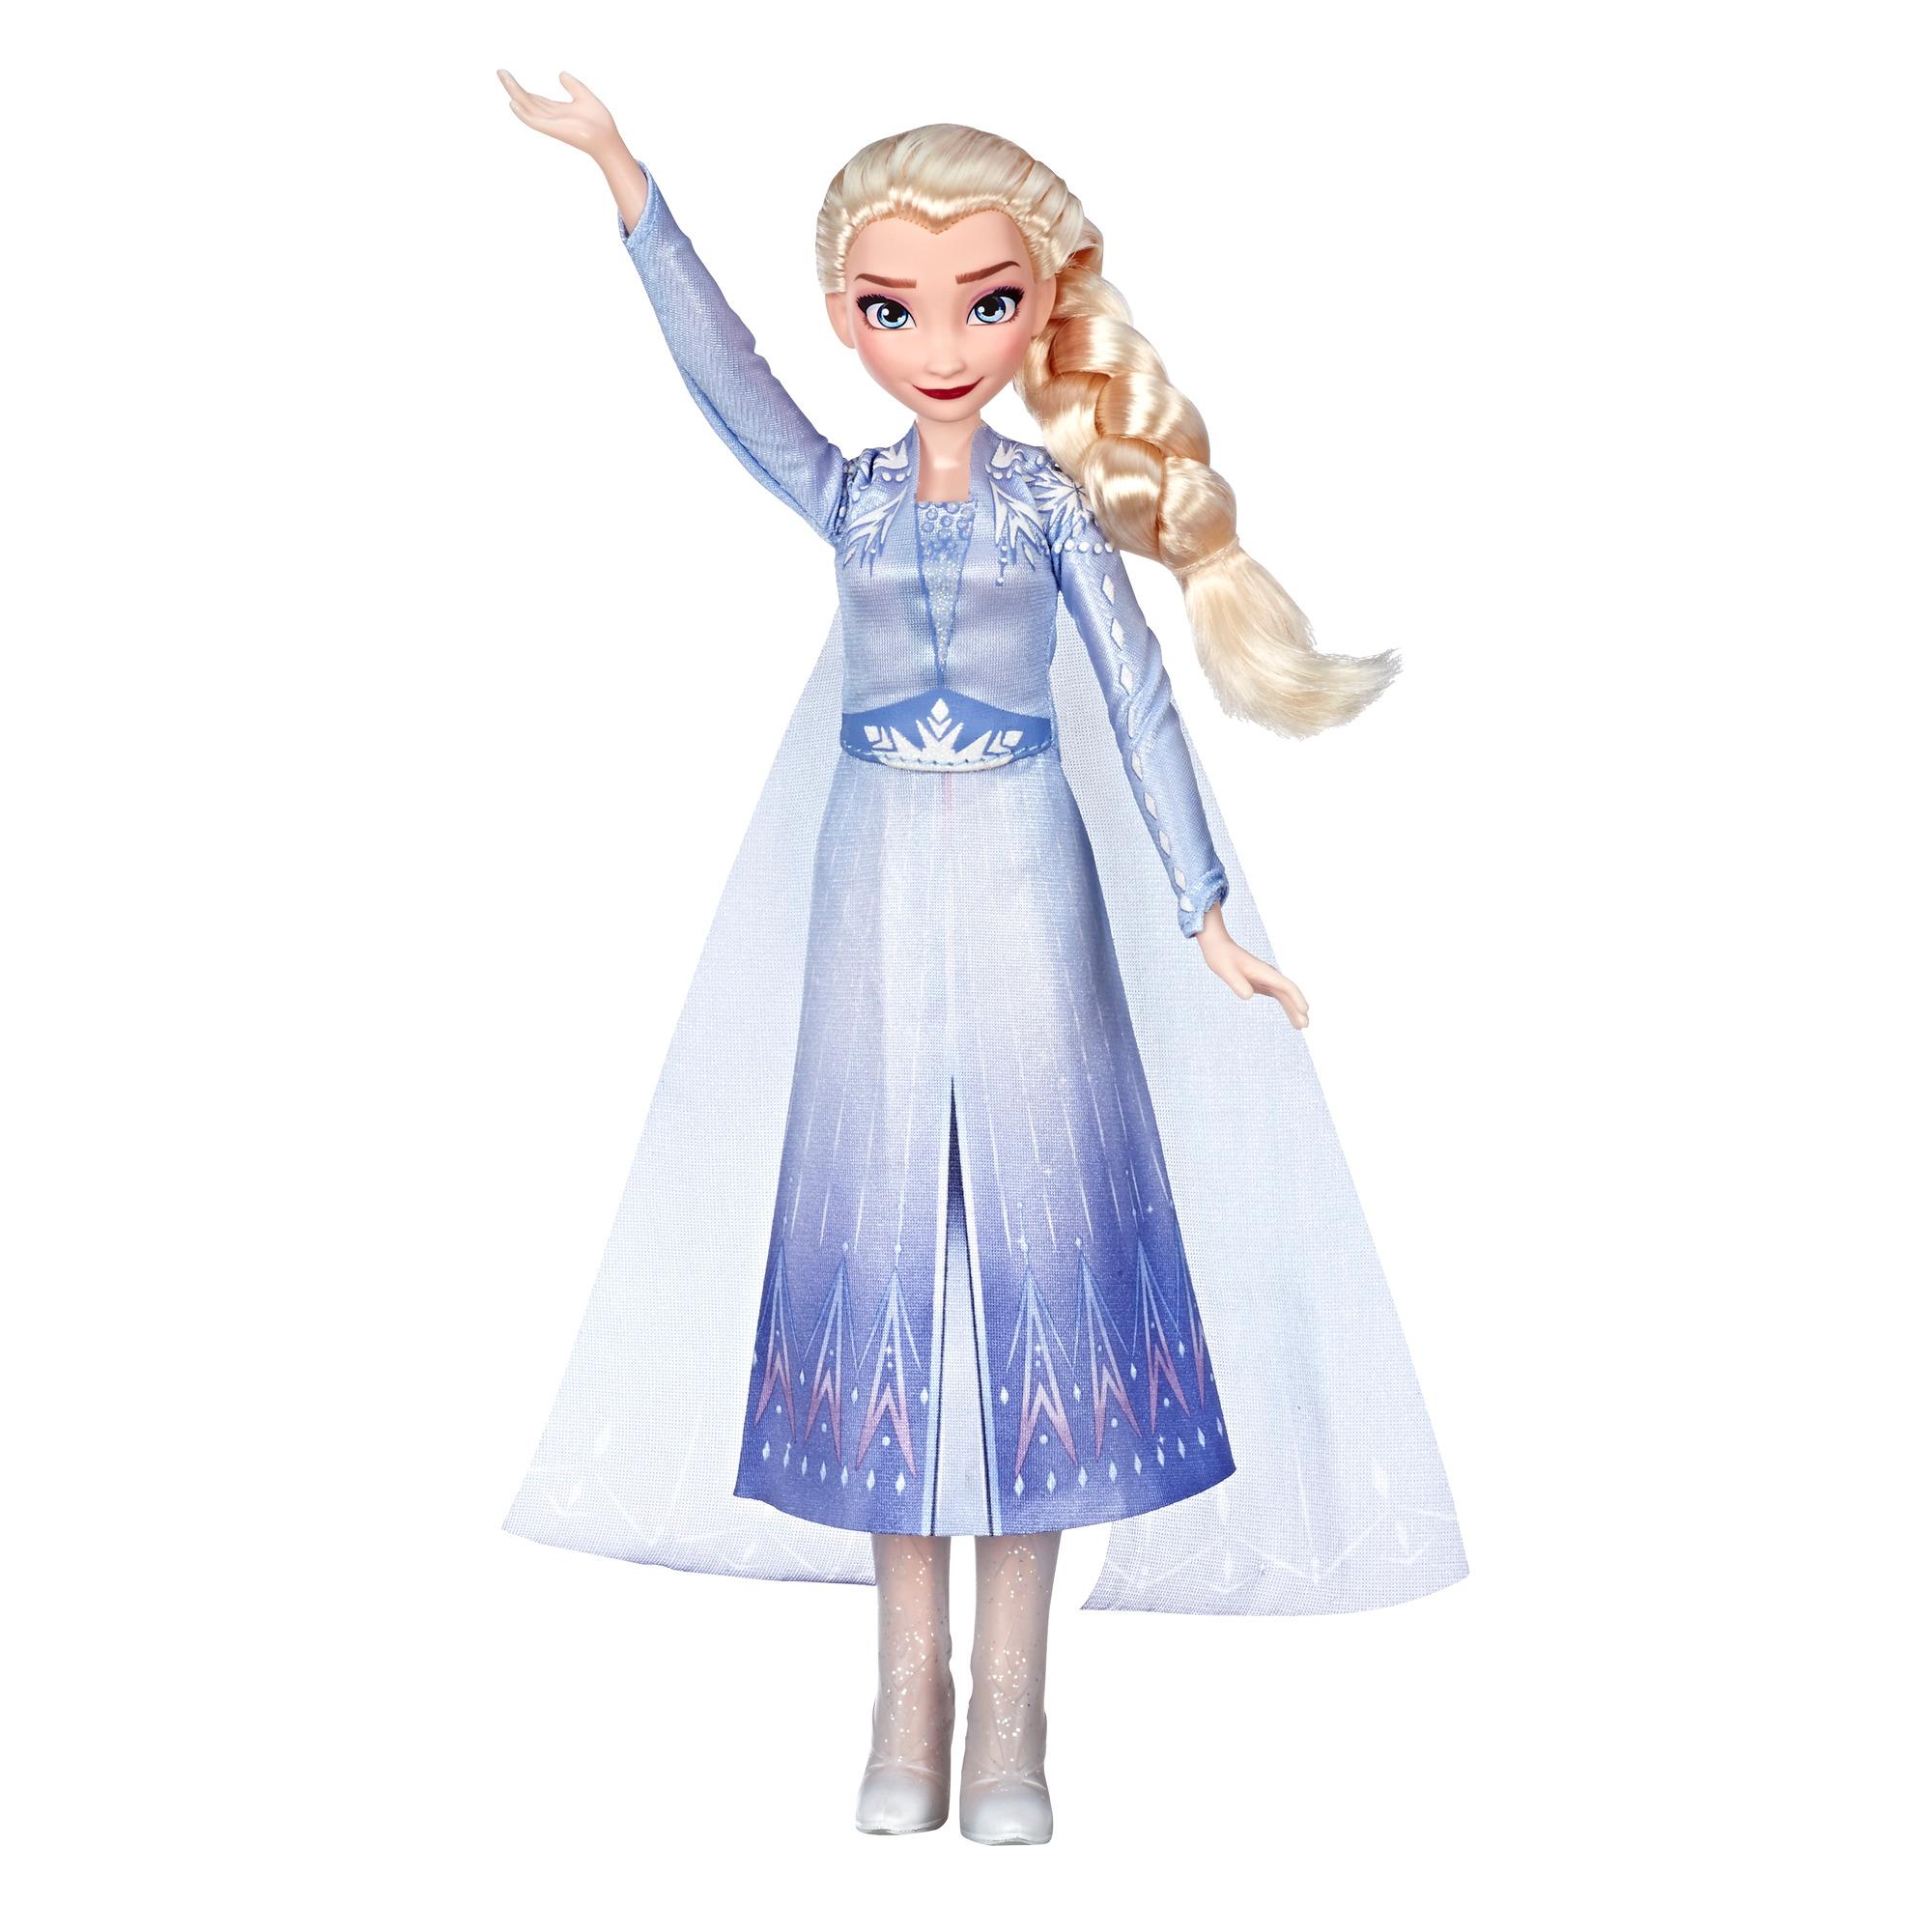 Disney Frozen Singing Elsa Fashion with Wearing Blue Dress Inspired by Disney Frozen 2 | Frozen